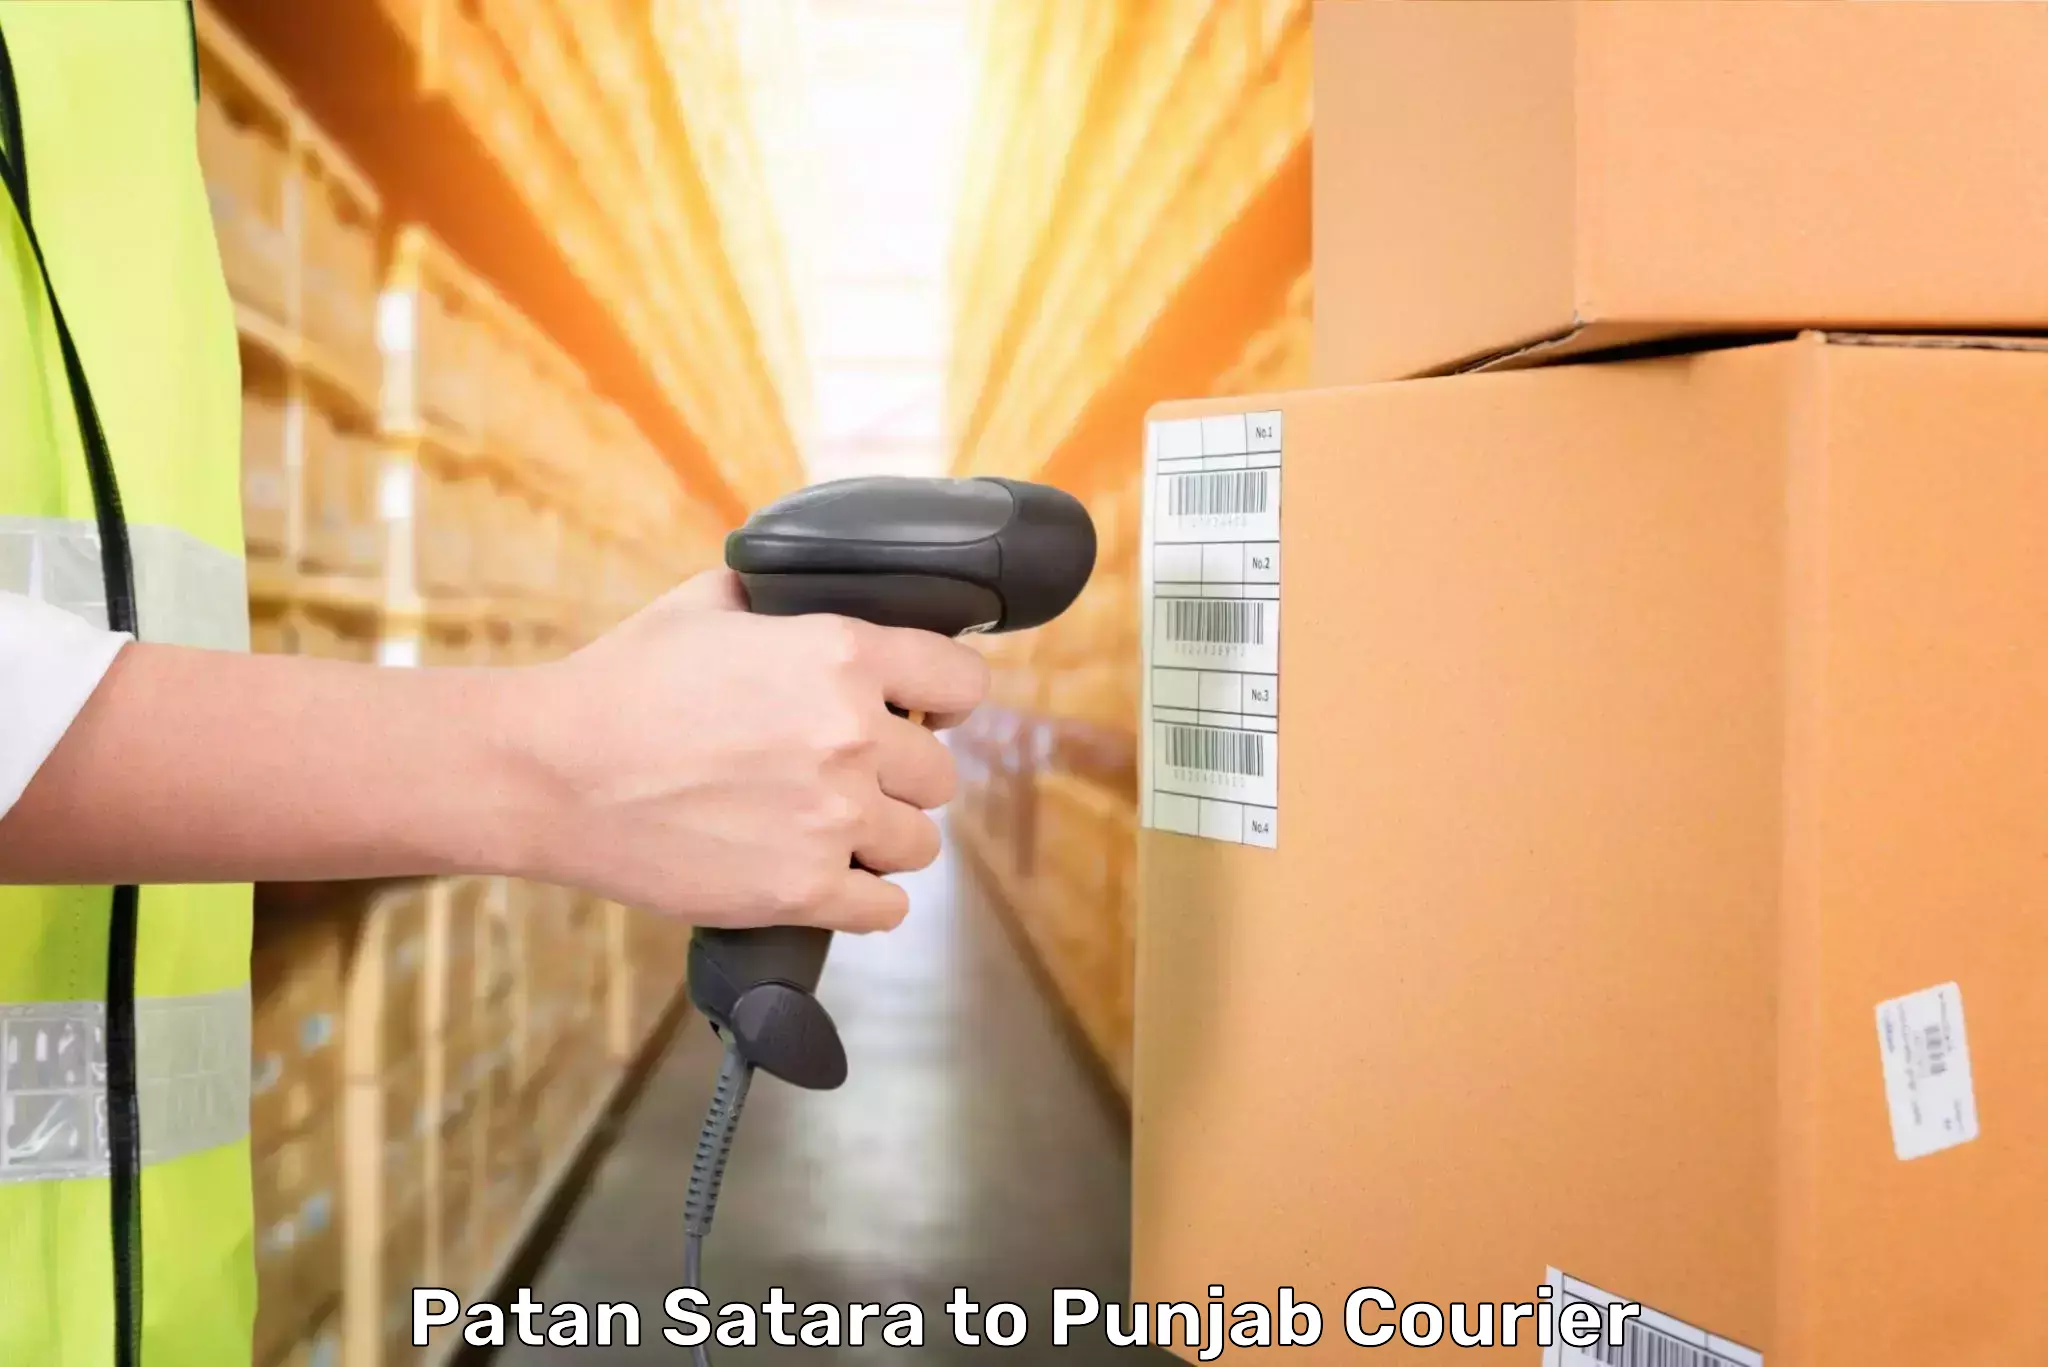 Luggage transport consulting Patan Satara to Punjab